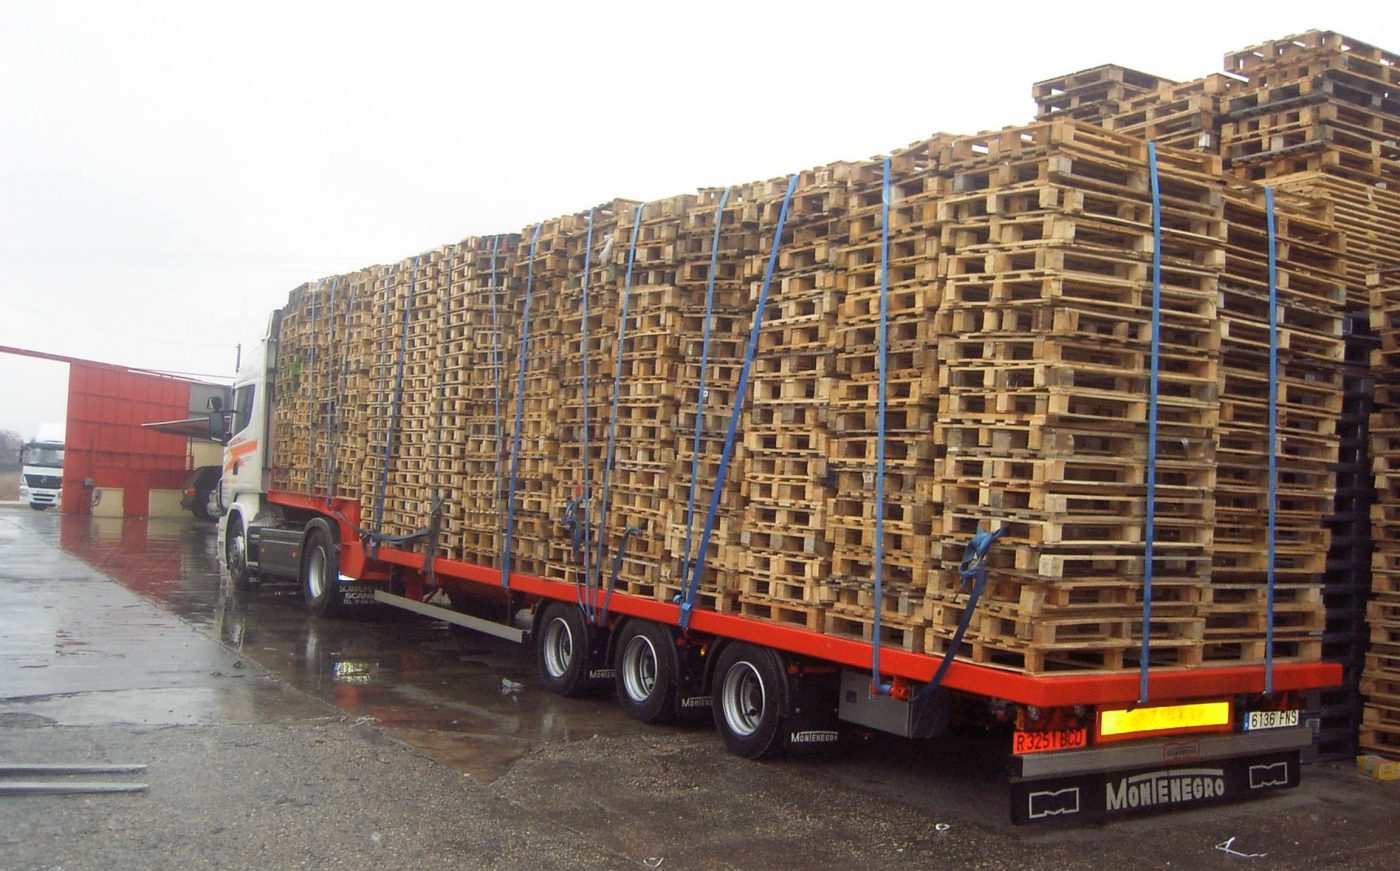 La fabricación y utilización de palets de madera en España creció en 2016